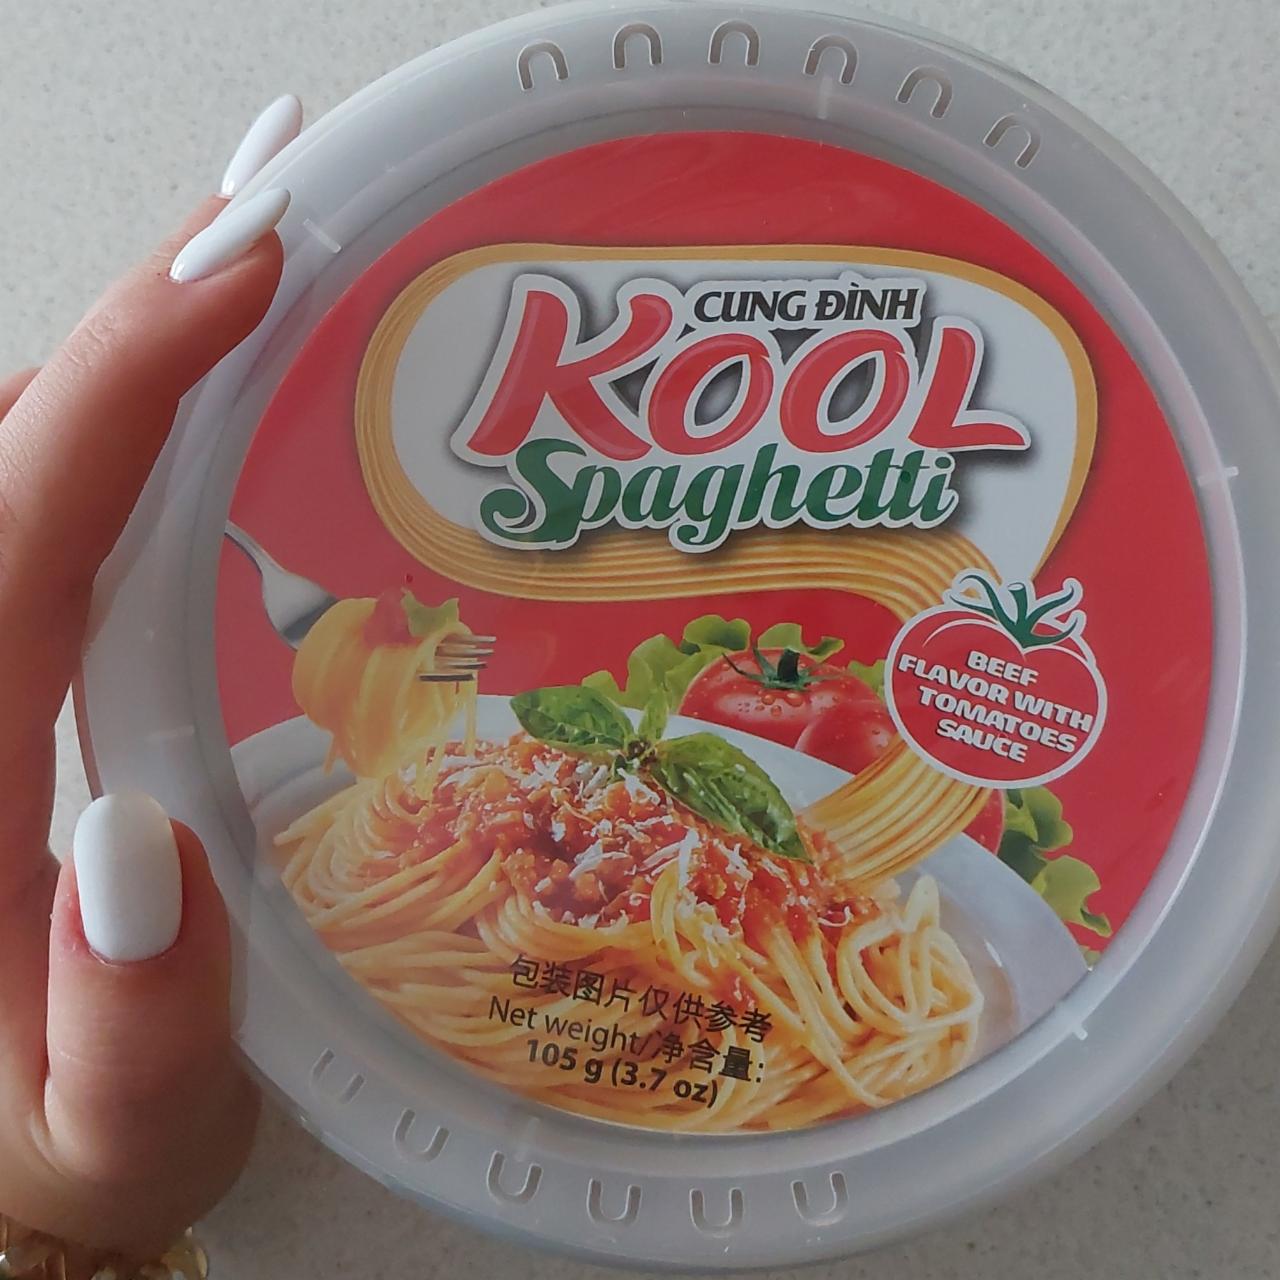 Фото - спагетти со вкусом говядины с томатным соусом быстрого приготовления Kool